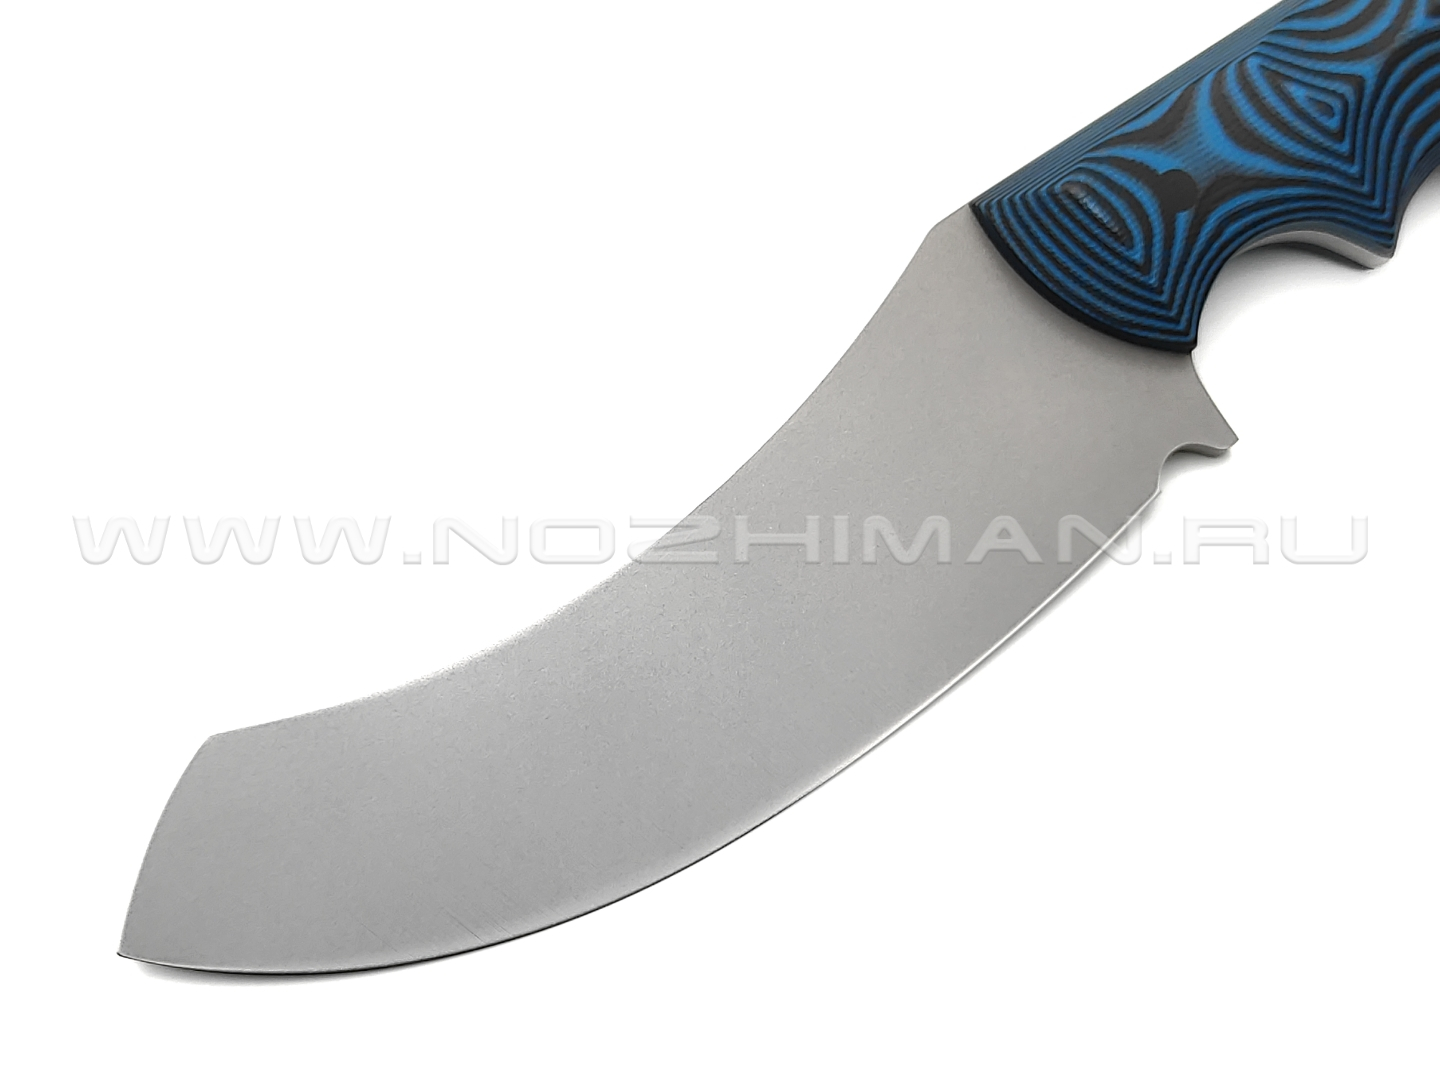 Волчий Век нож Кондрат 12 сталь 95х18 WA bead-blast, рукоять G10 black & blue